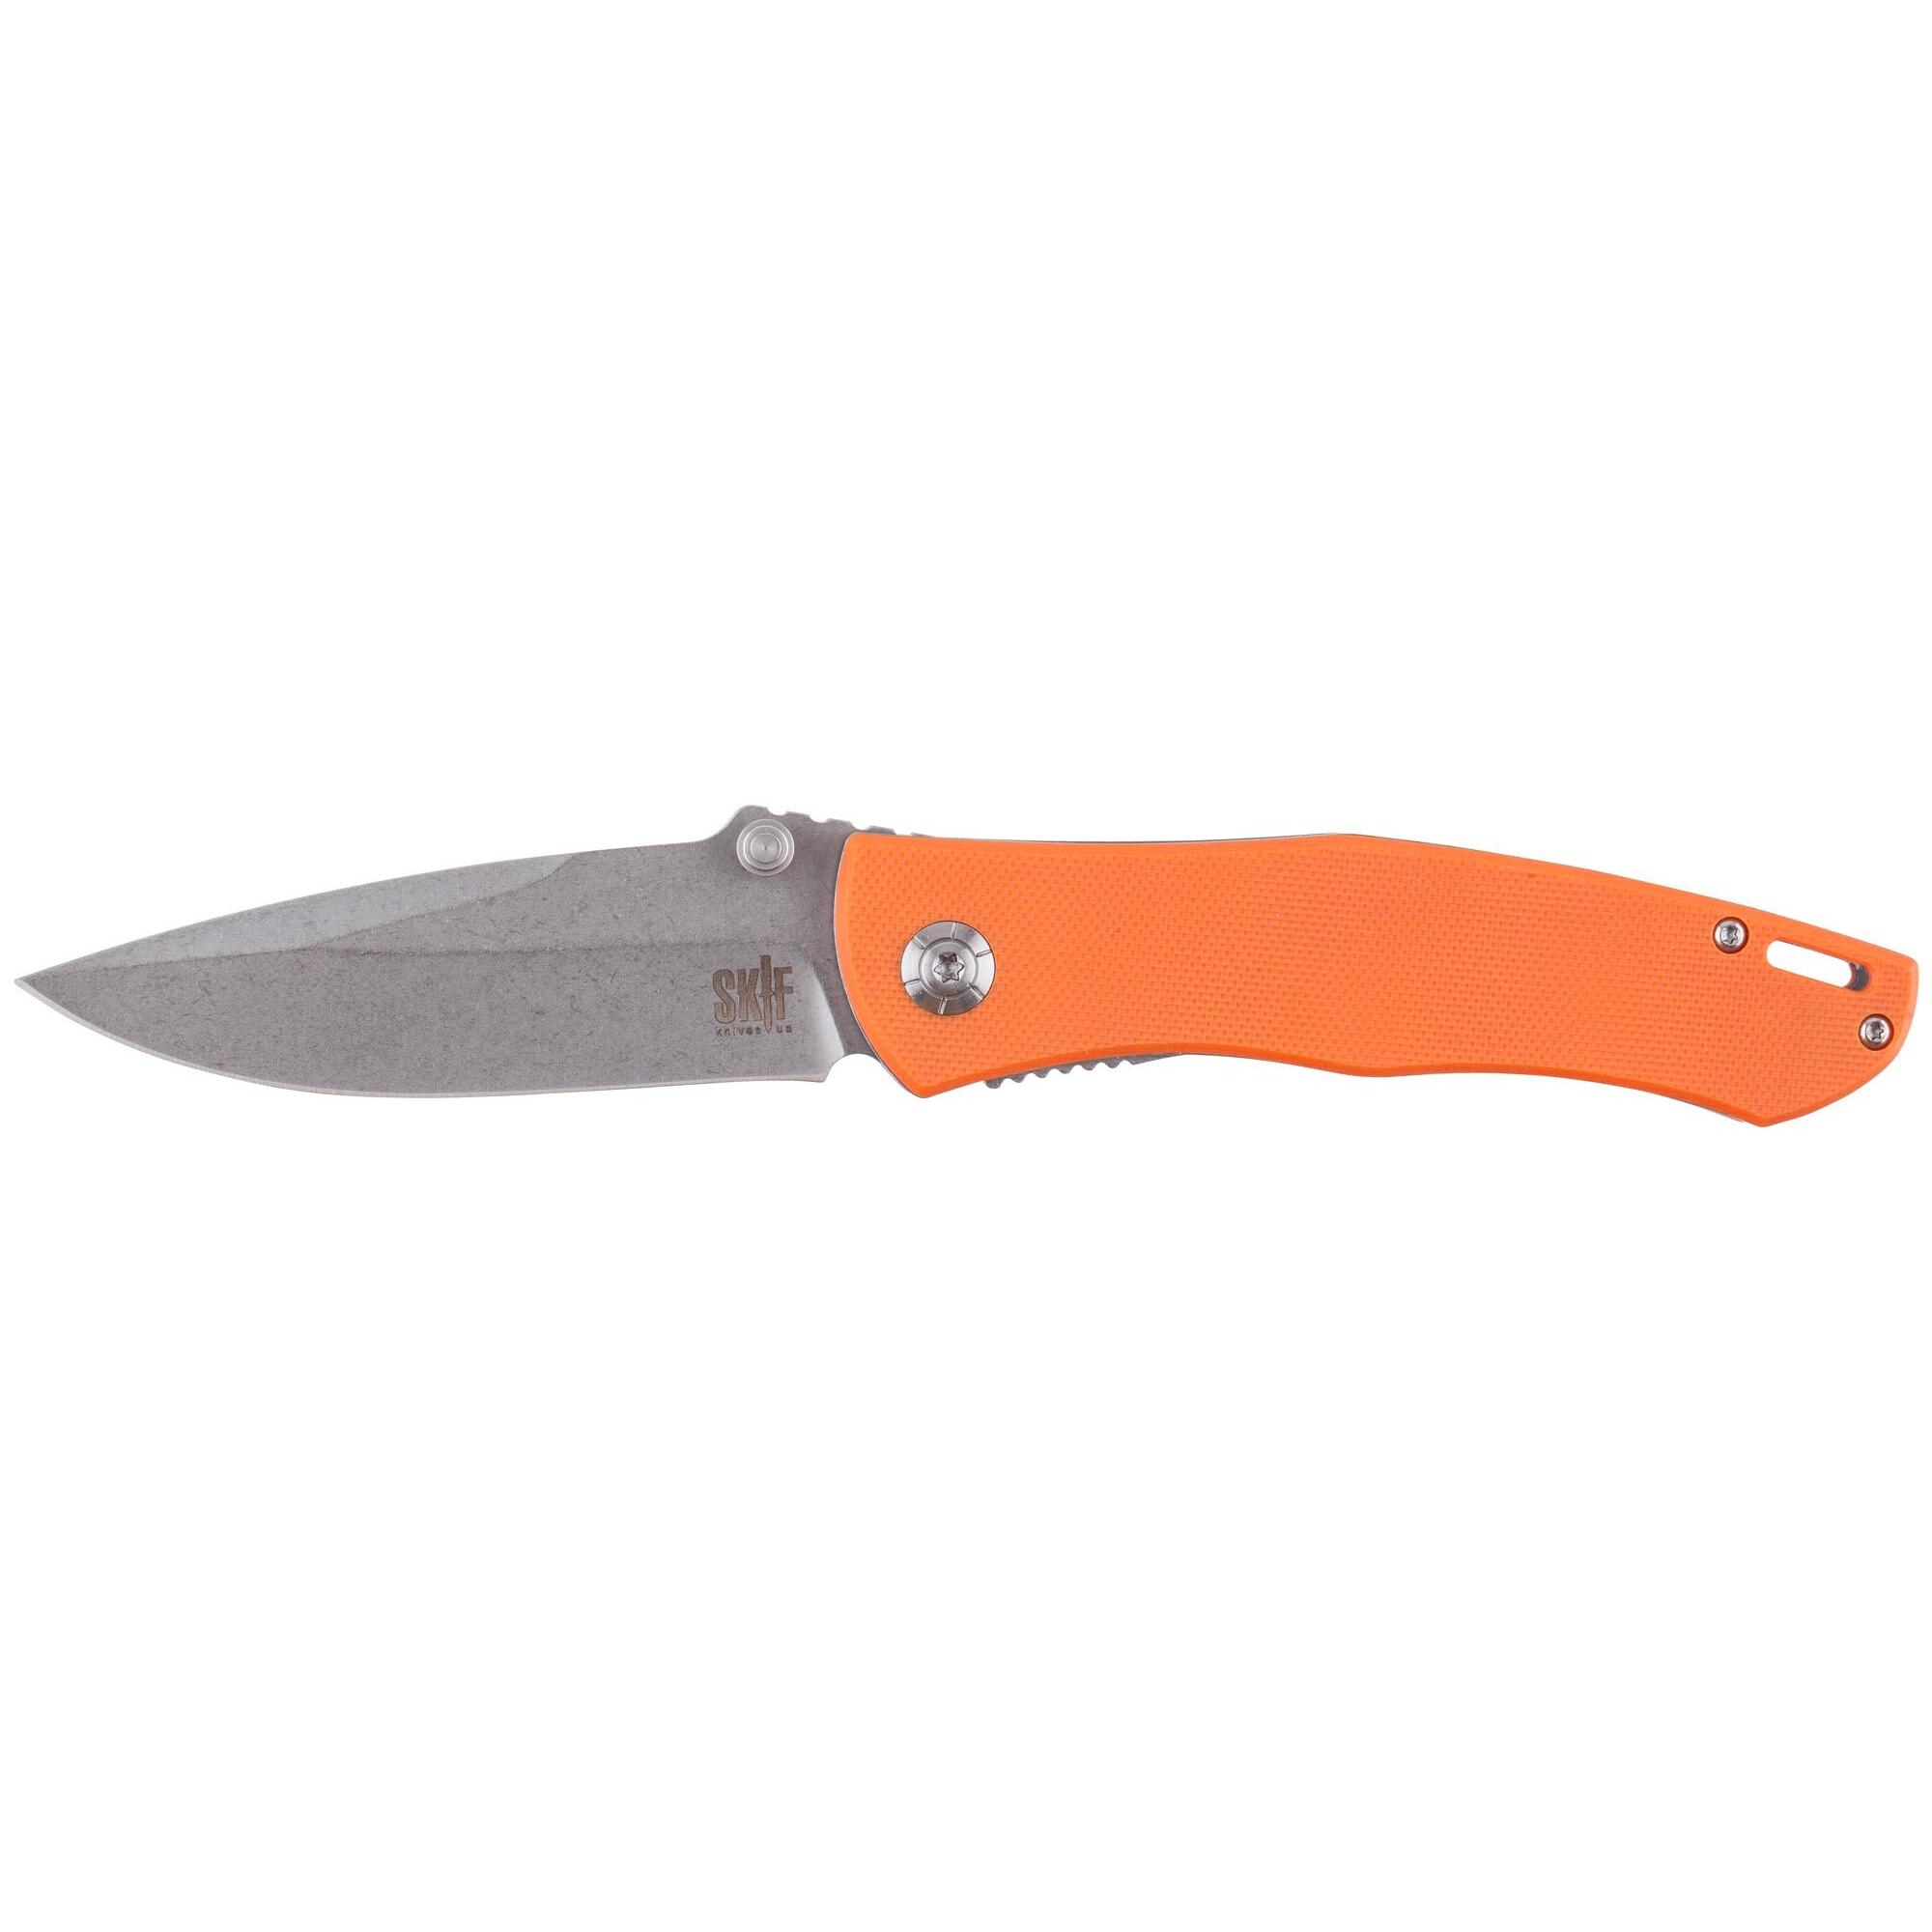 Нож Skif Swing Orange IS-002OR 1765.02.15